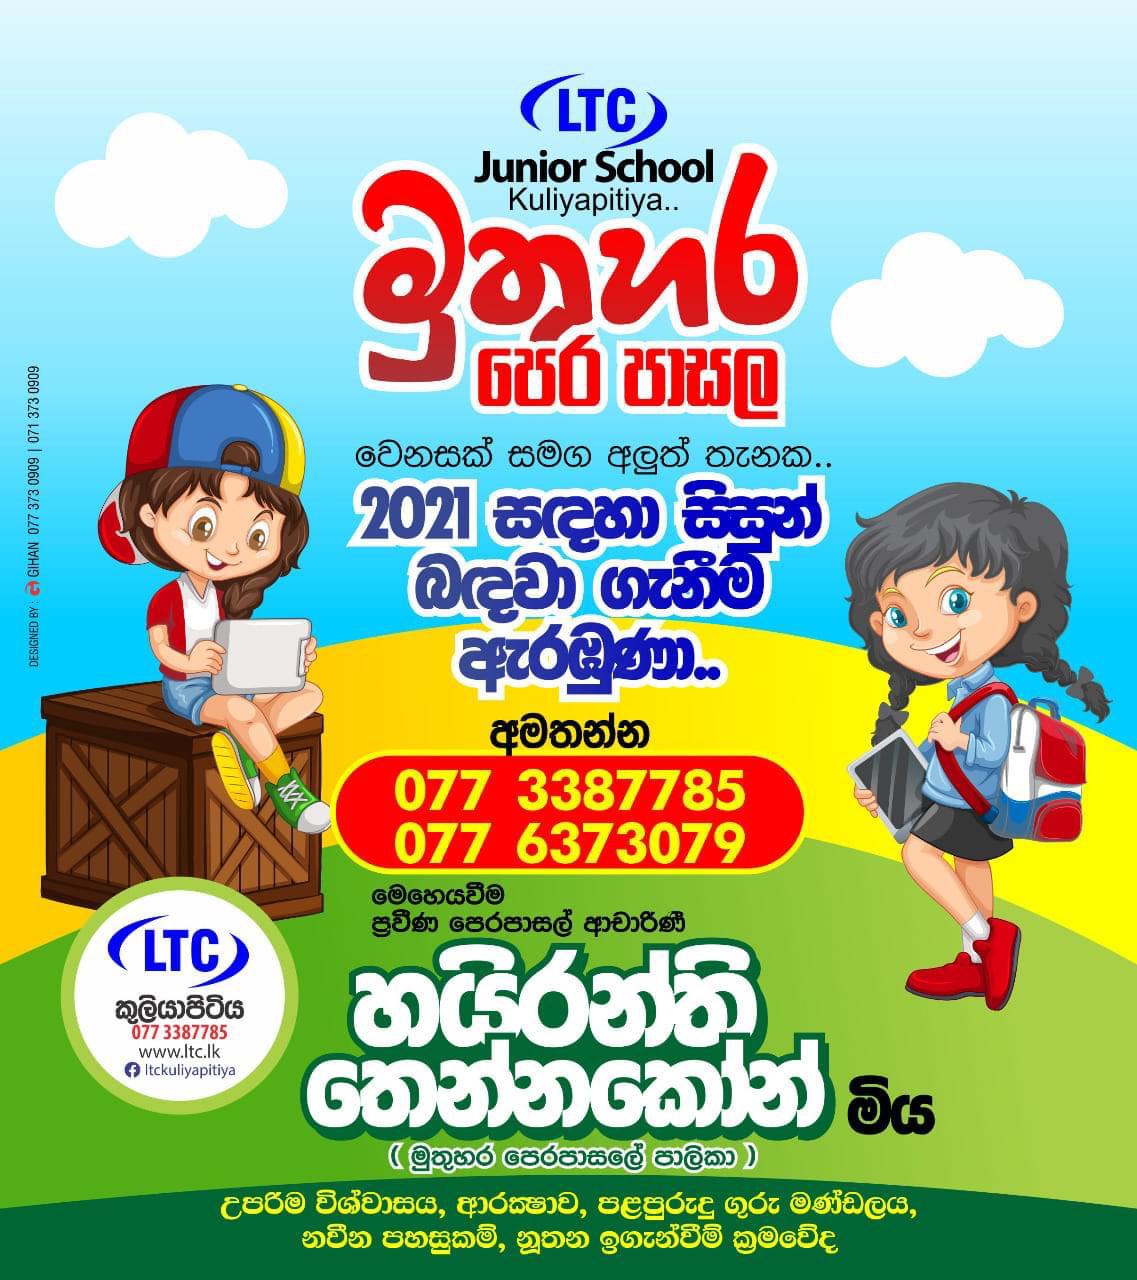 Ltc Educational Center Kuliyapitiya-New and Events